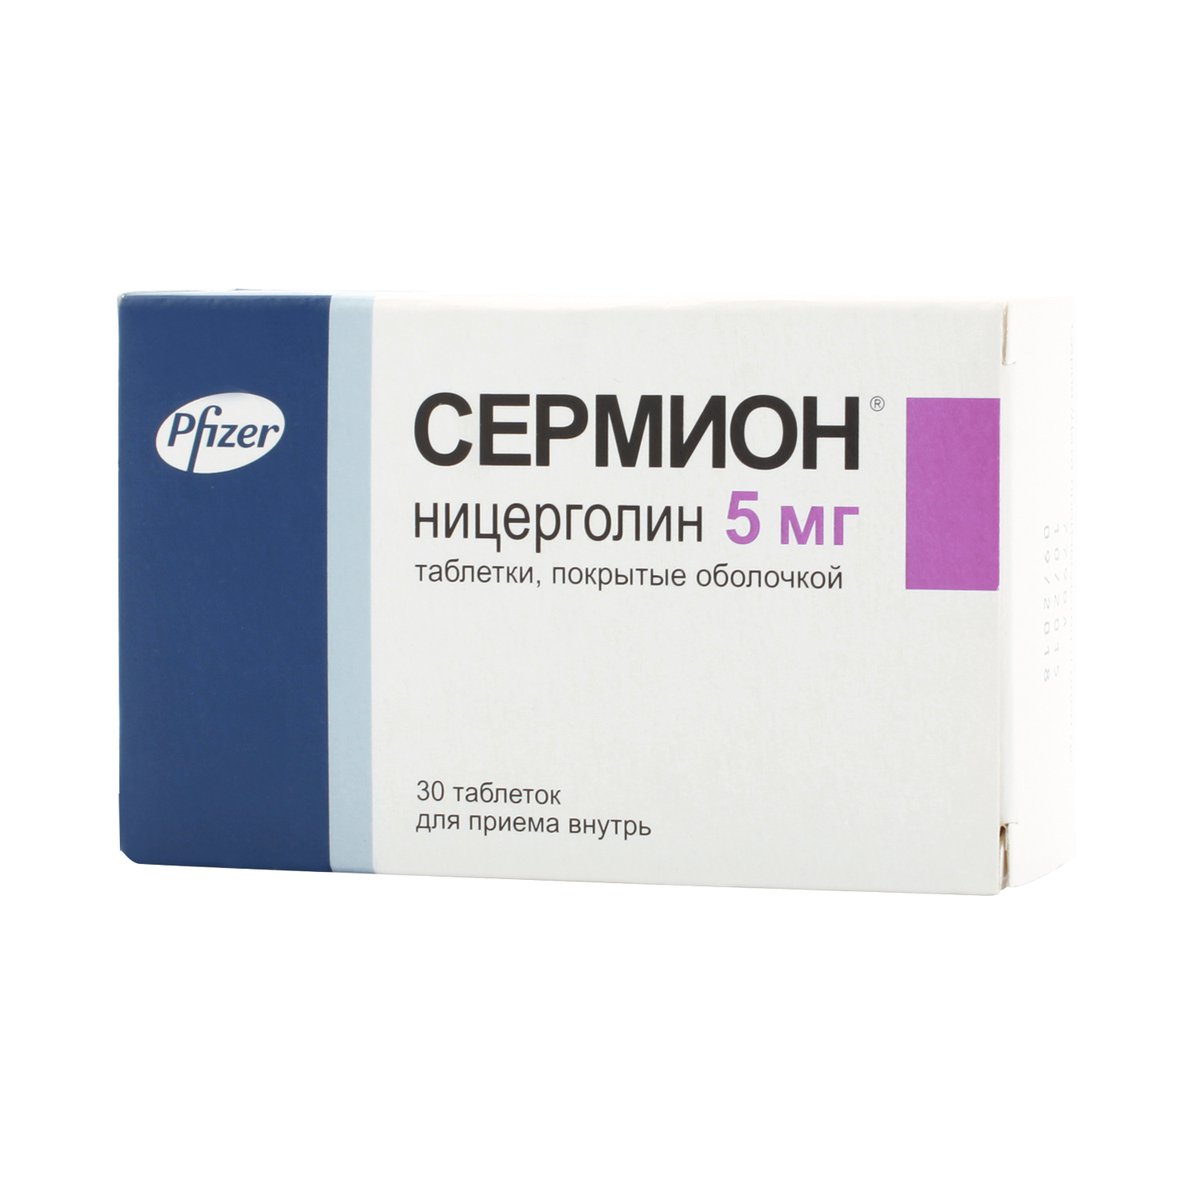 Сермион (таблетки, 30 шт, 5 мг) - цена,  онлайн  .